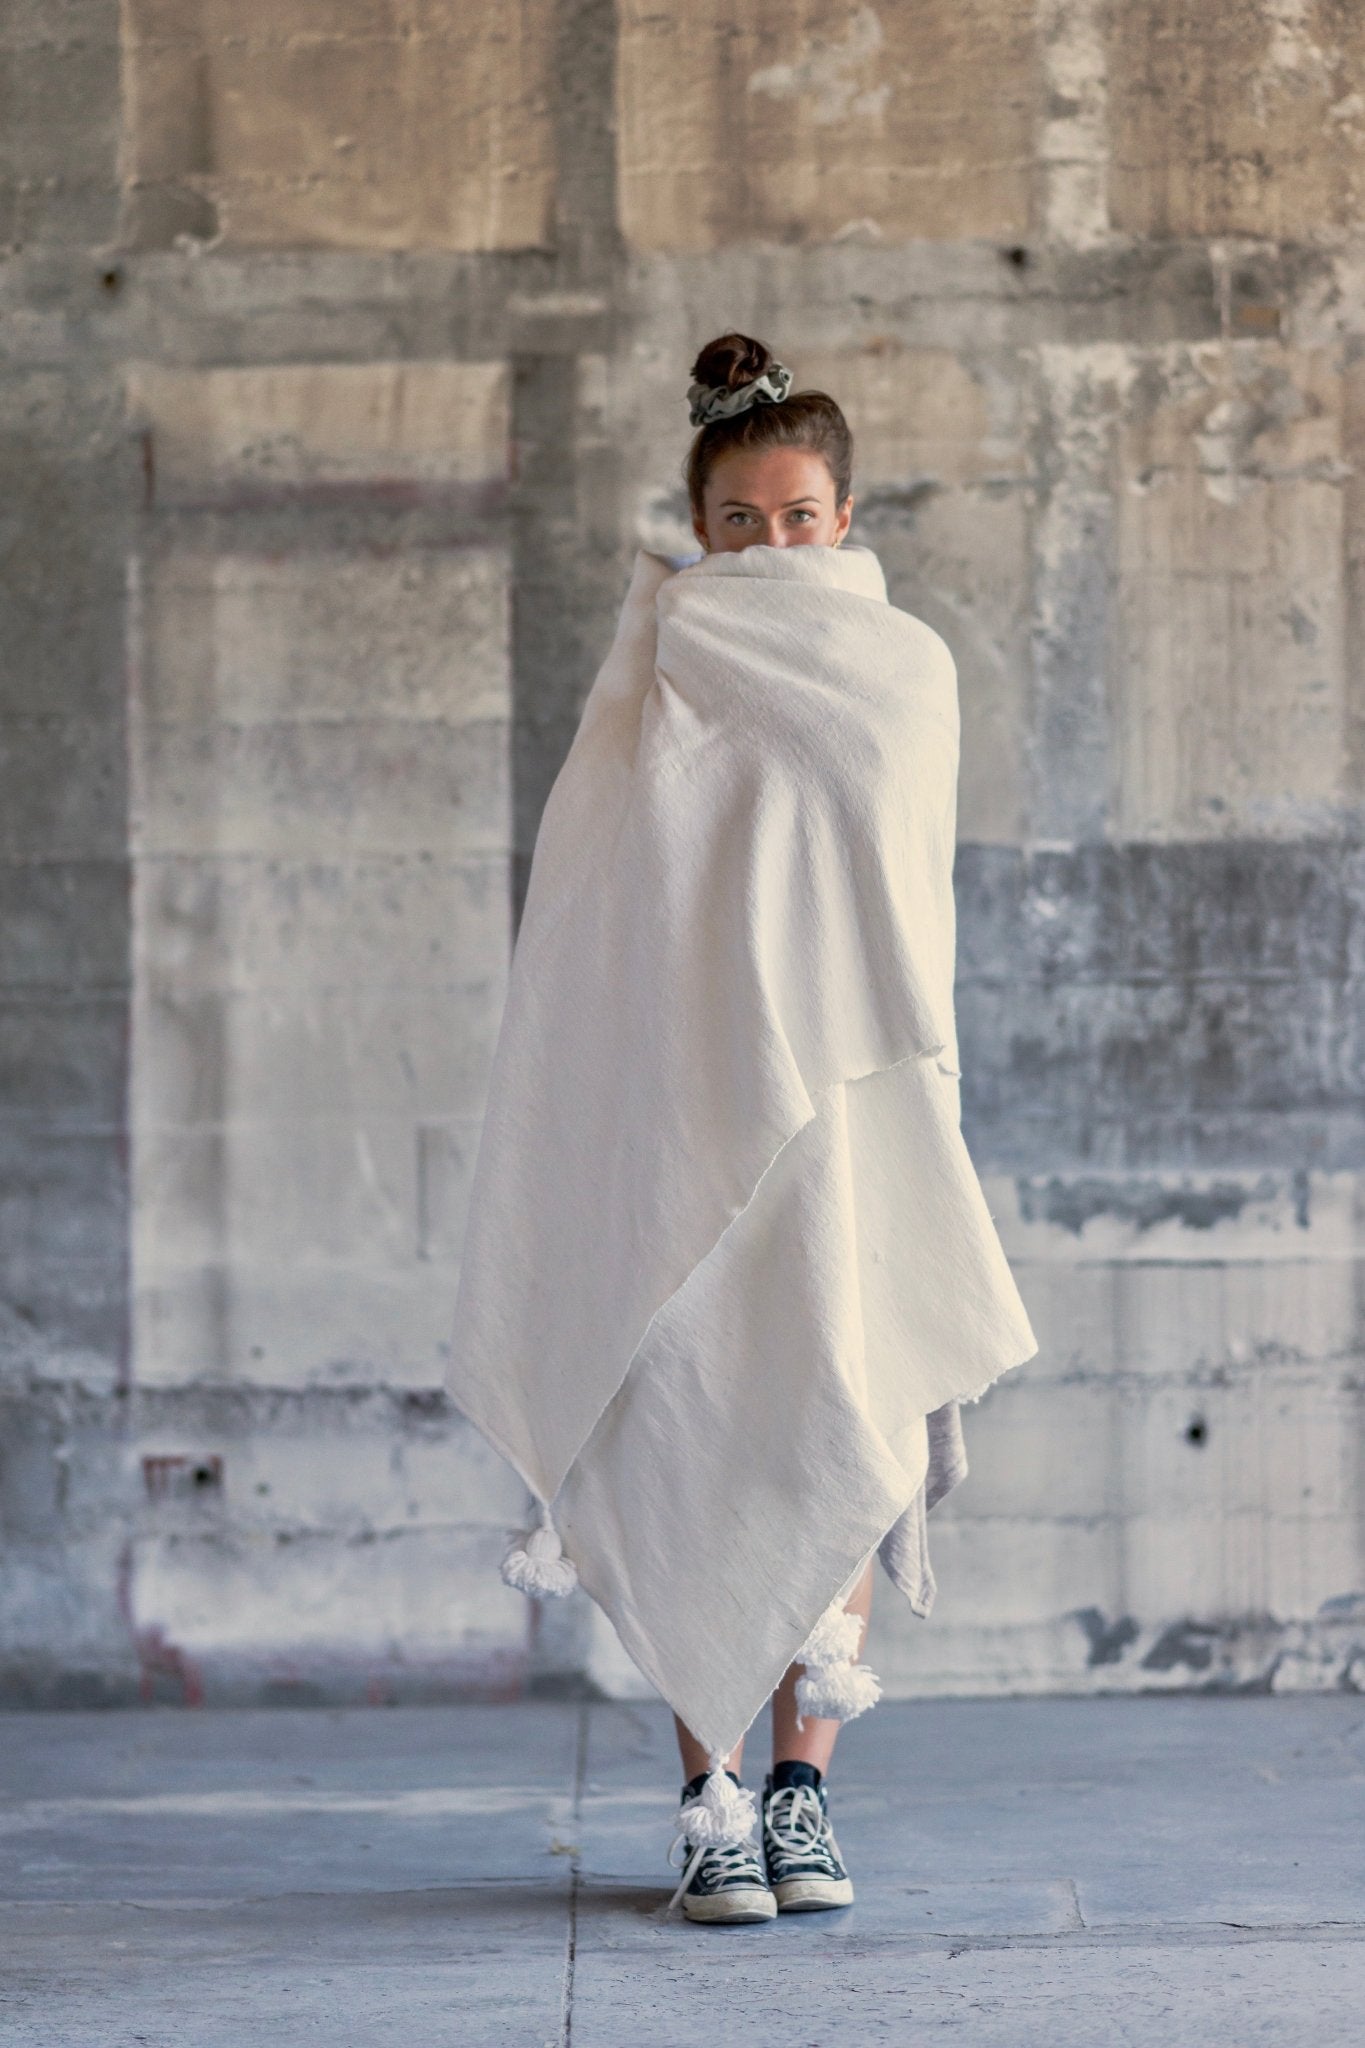 White Pom Pom Blanket - Modern Myth Decor